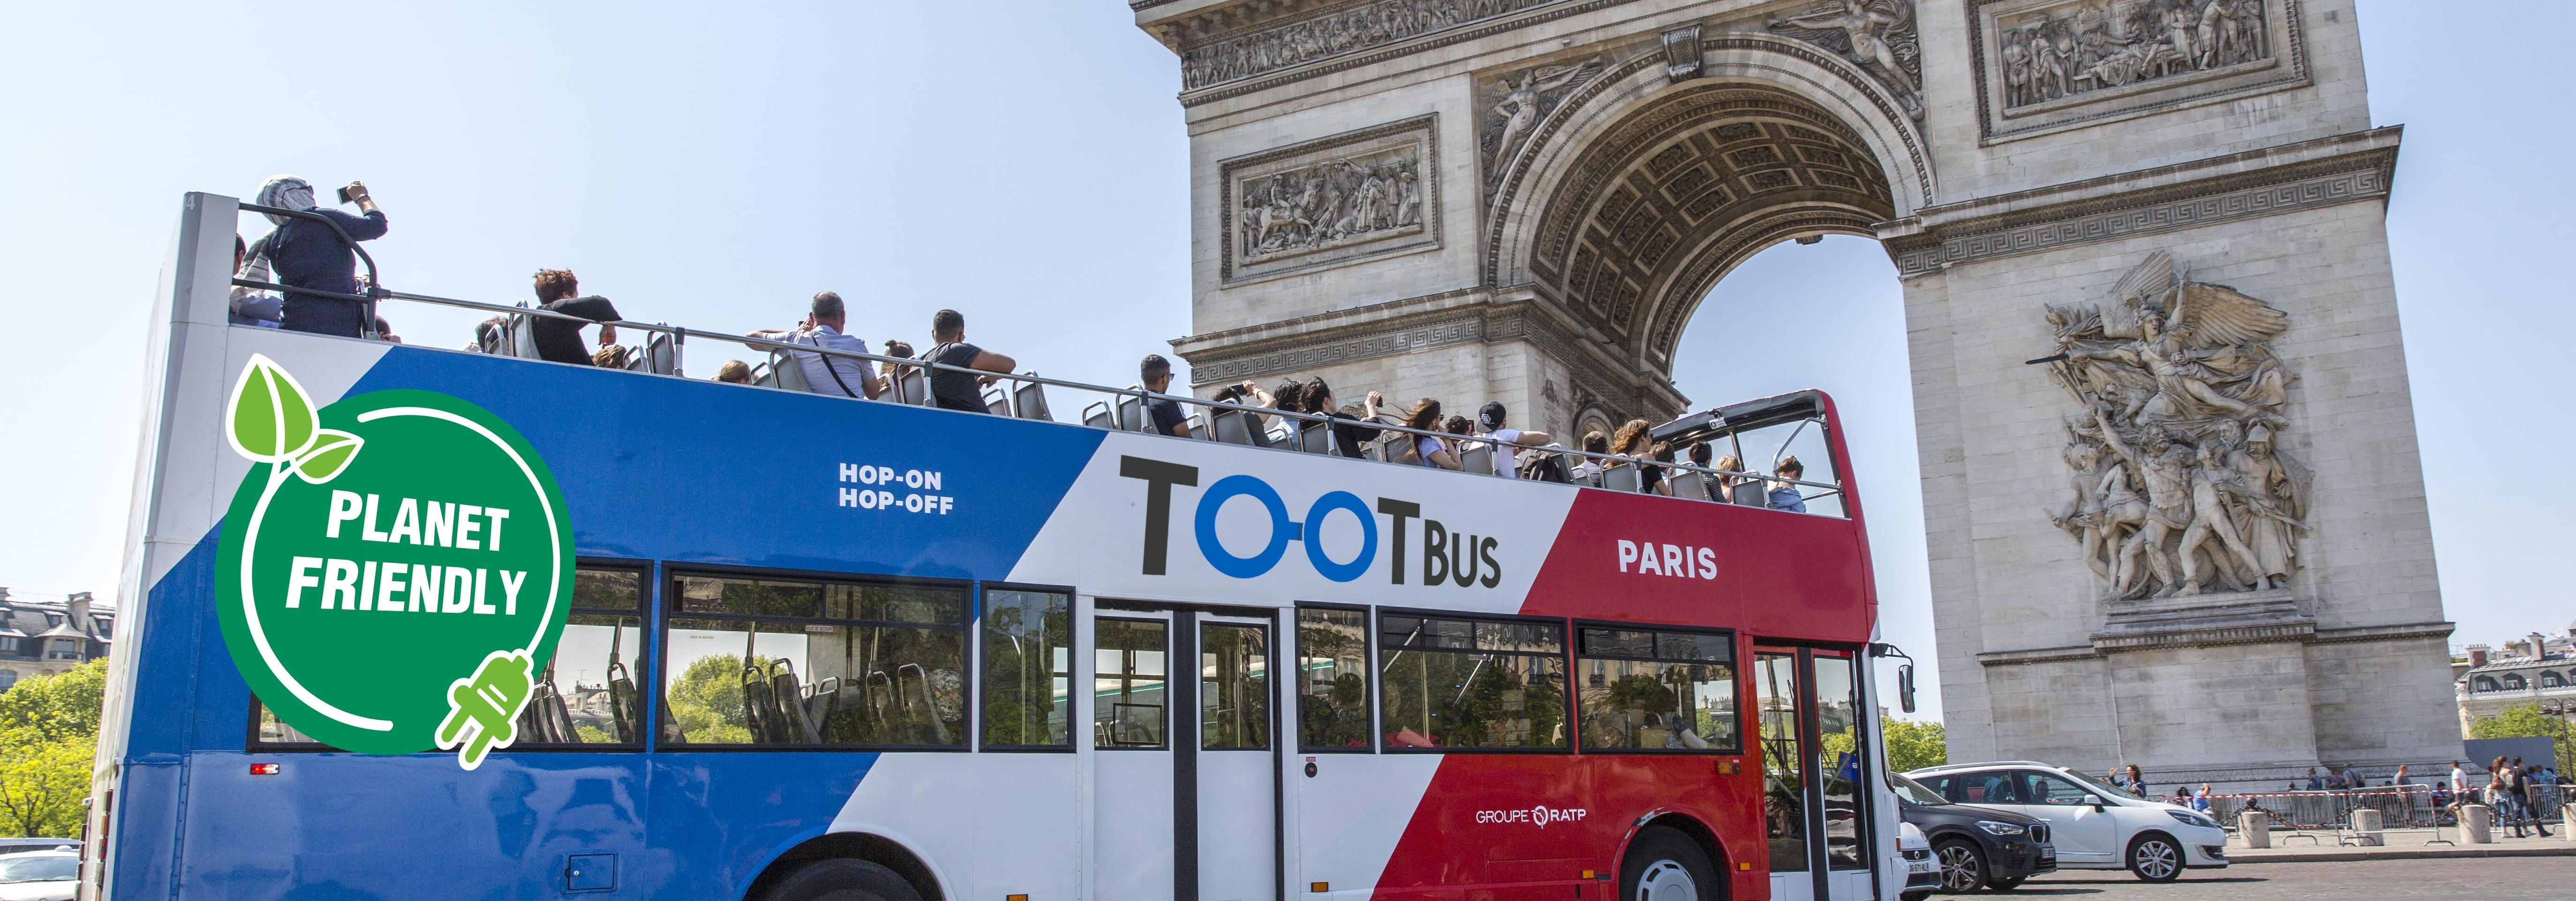 Экскурсия по Парижу на автобусе: 1, 2 или 3 дня